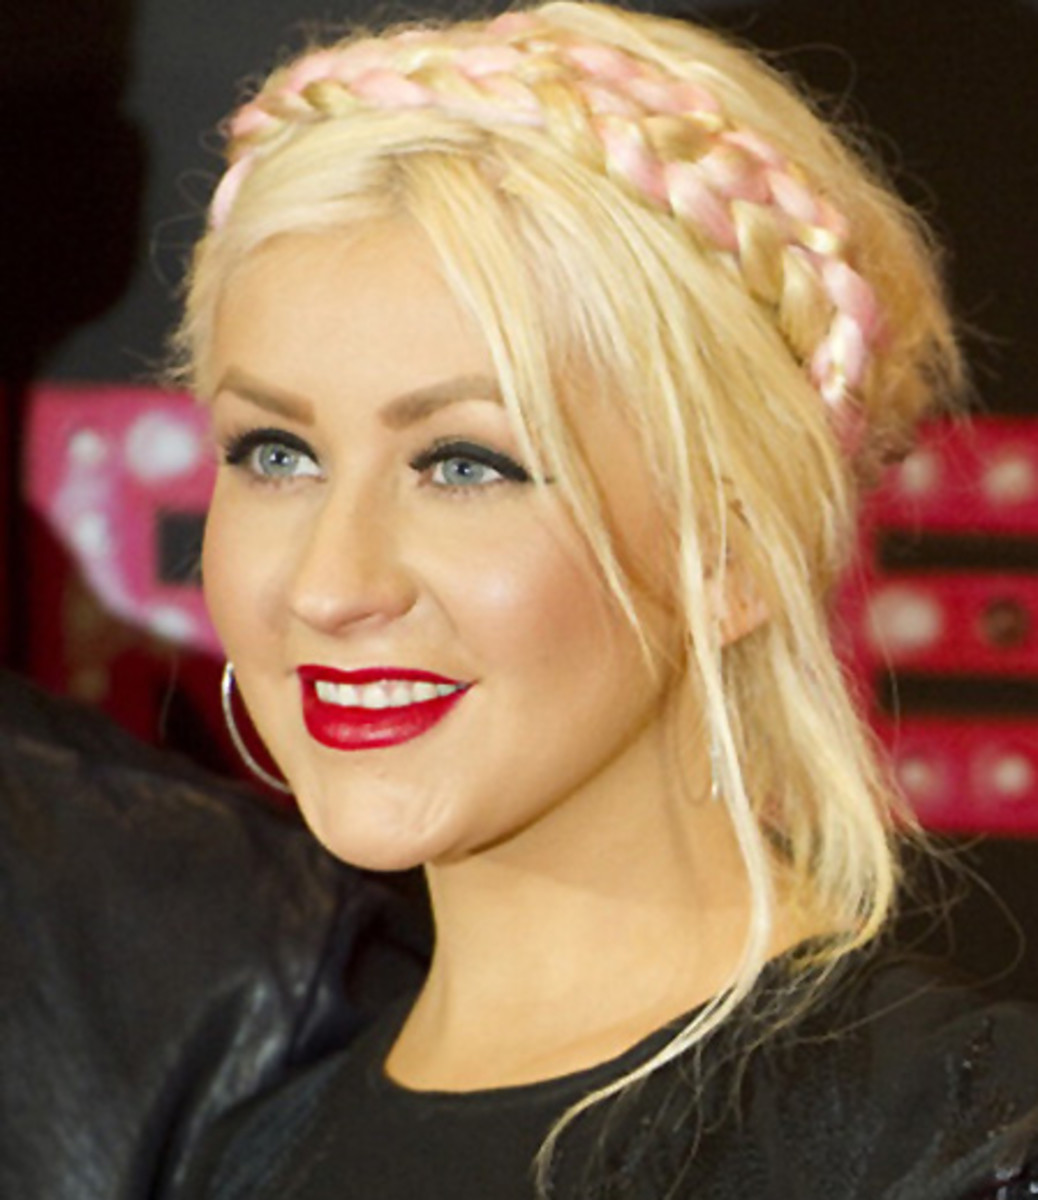 US actress and singer Christina Aguilera